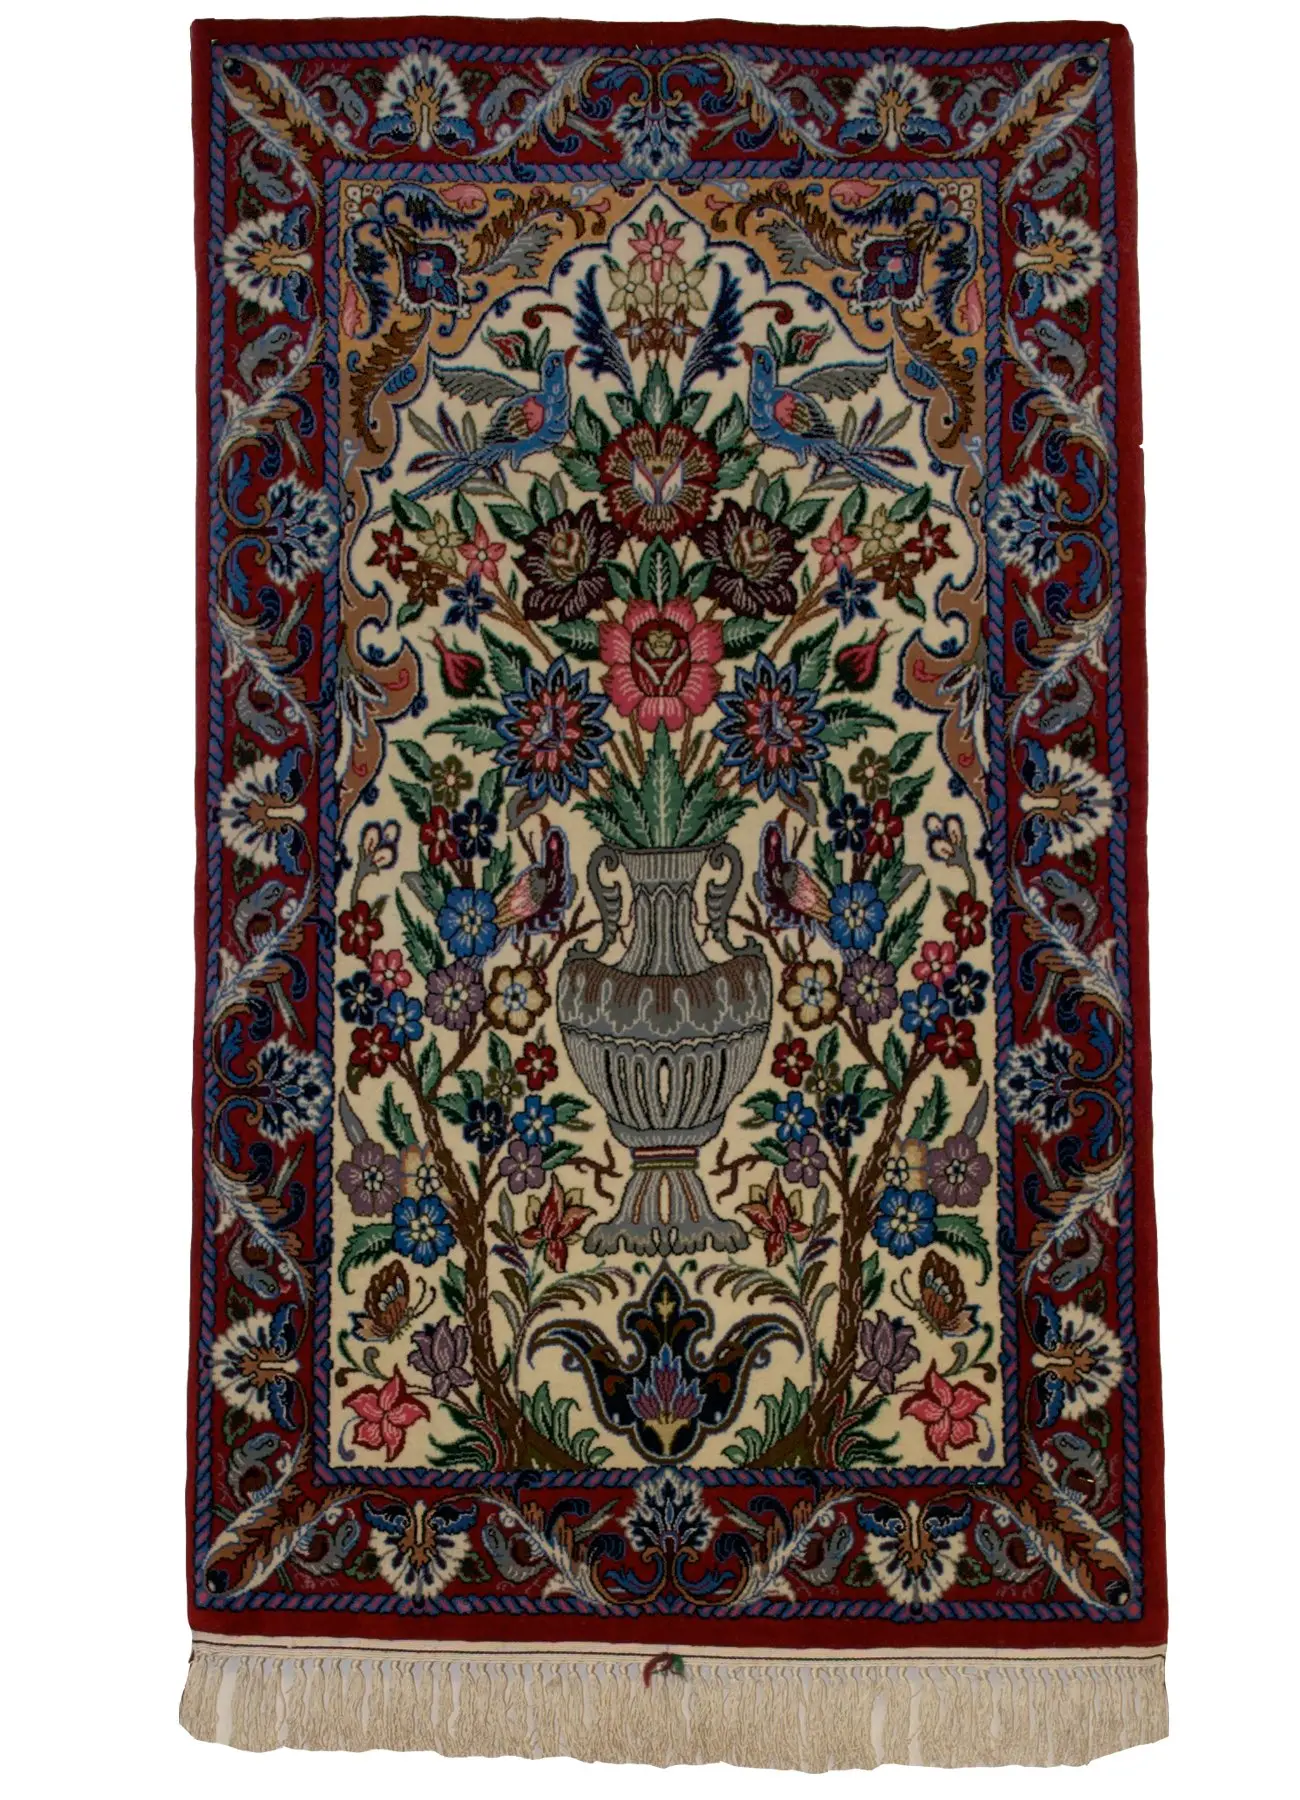 Persian Esfahan rug 2' 2" x 3' 9" - Shabahang Royal Carpet